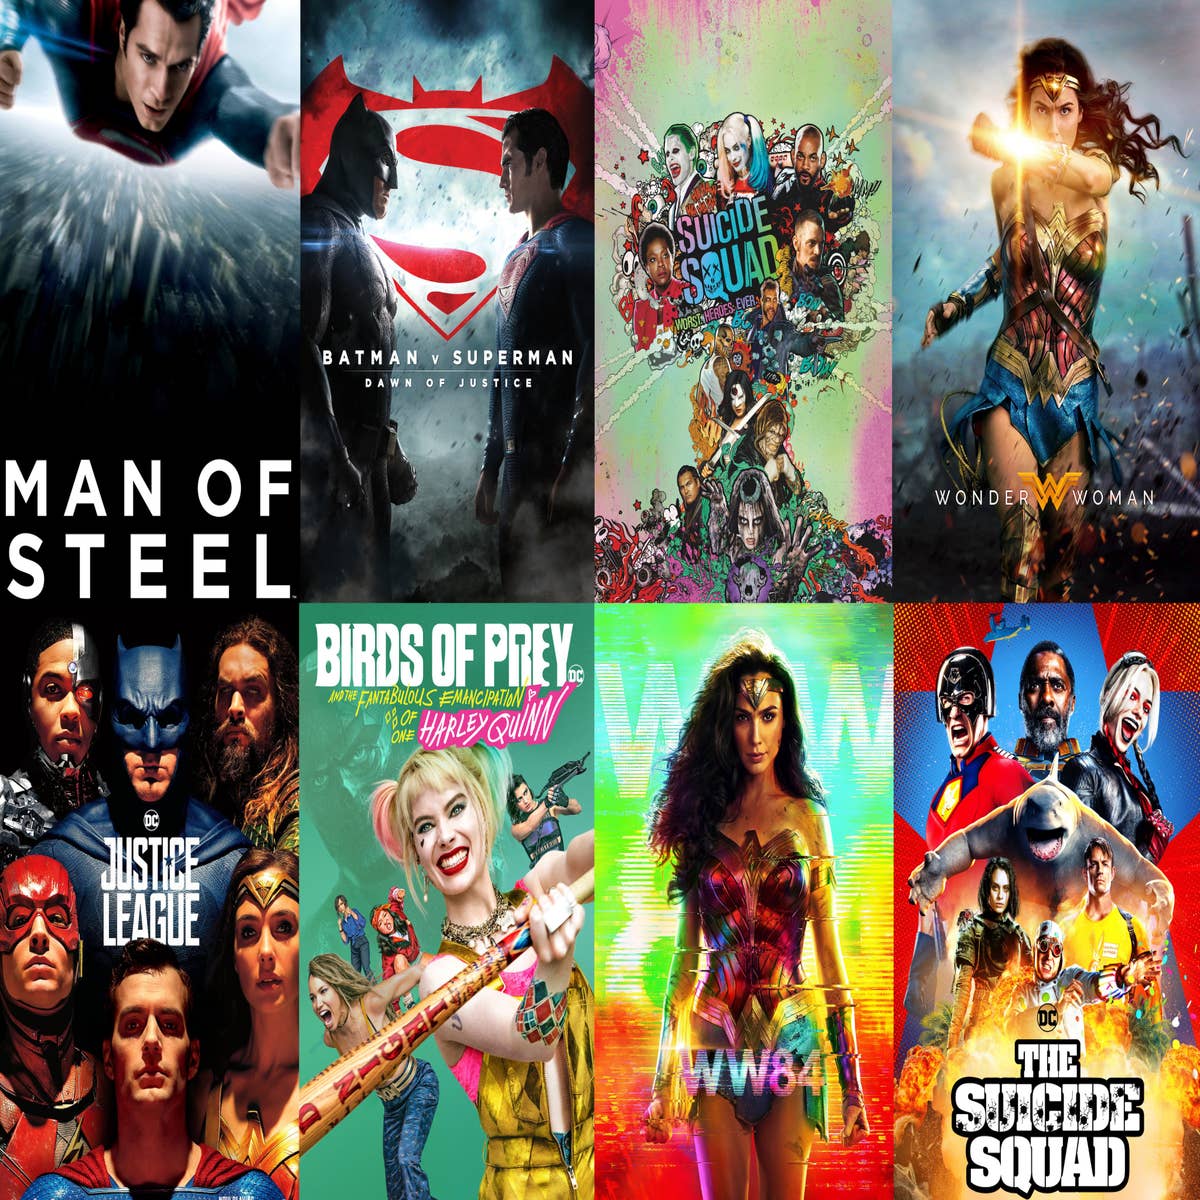 Filmes que serão lançados na Netflix ao longo de 2023